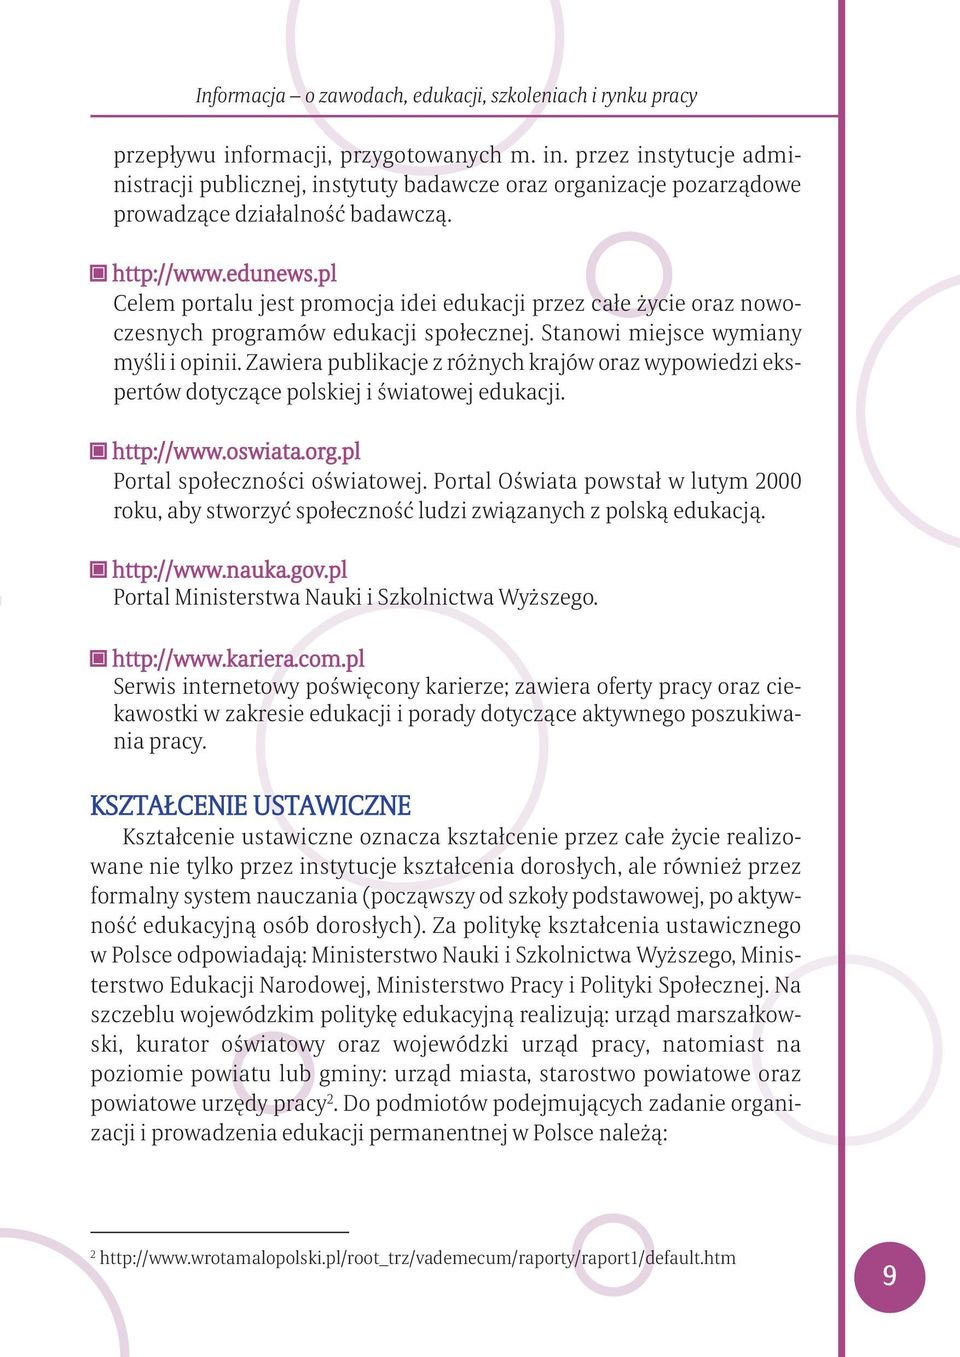 Zawiera publikacje z różnych krajów oraz wypowiedzi ekspertów dotyczące polskiej i światowej edukacji. http://www.oswiata.org.pl Portal społeczności oświatowej.